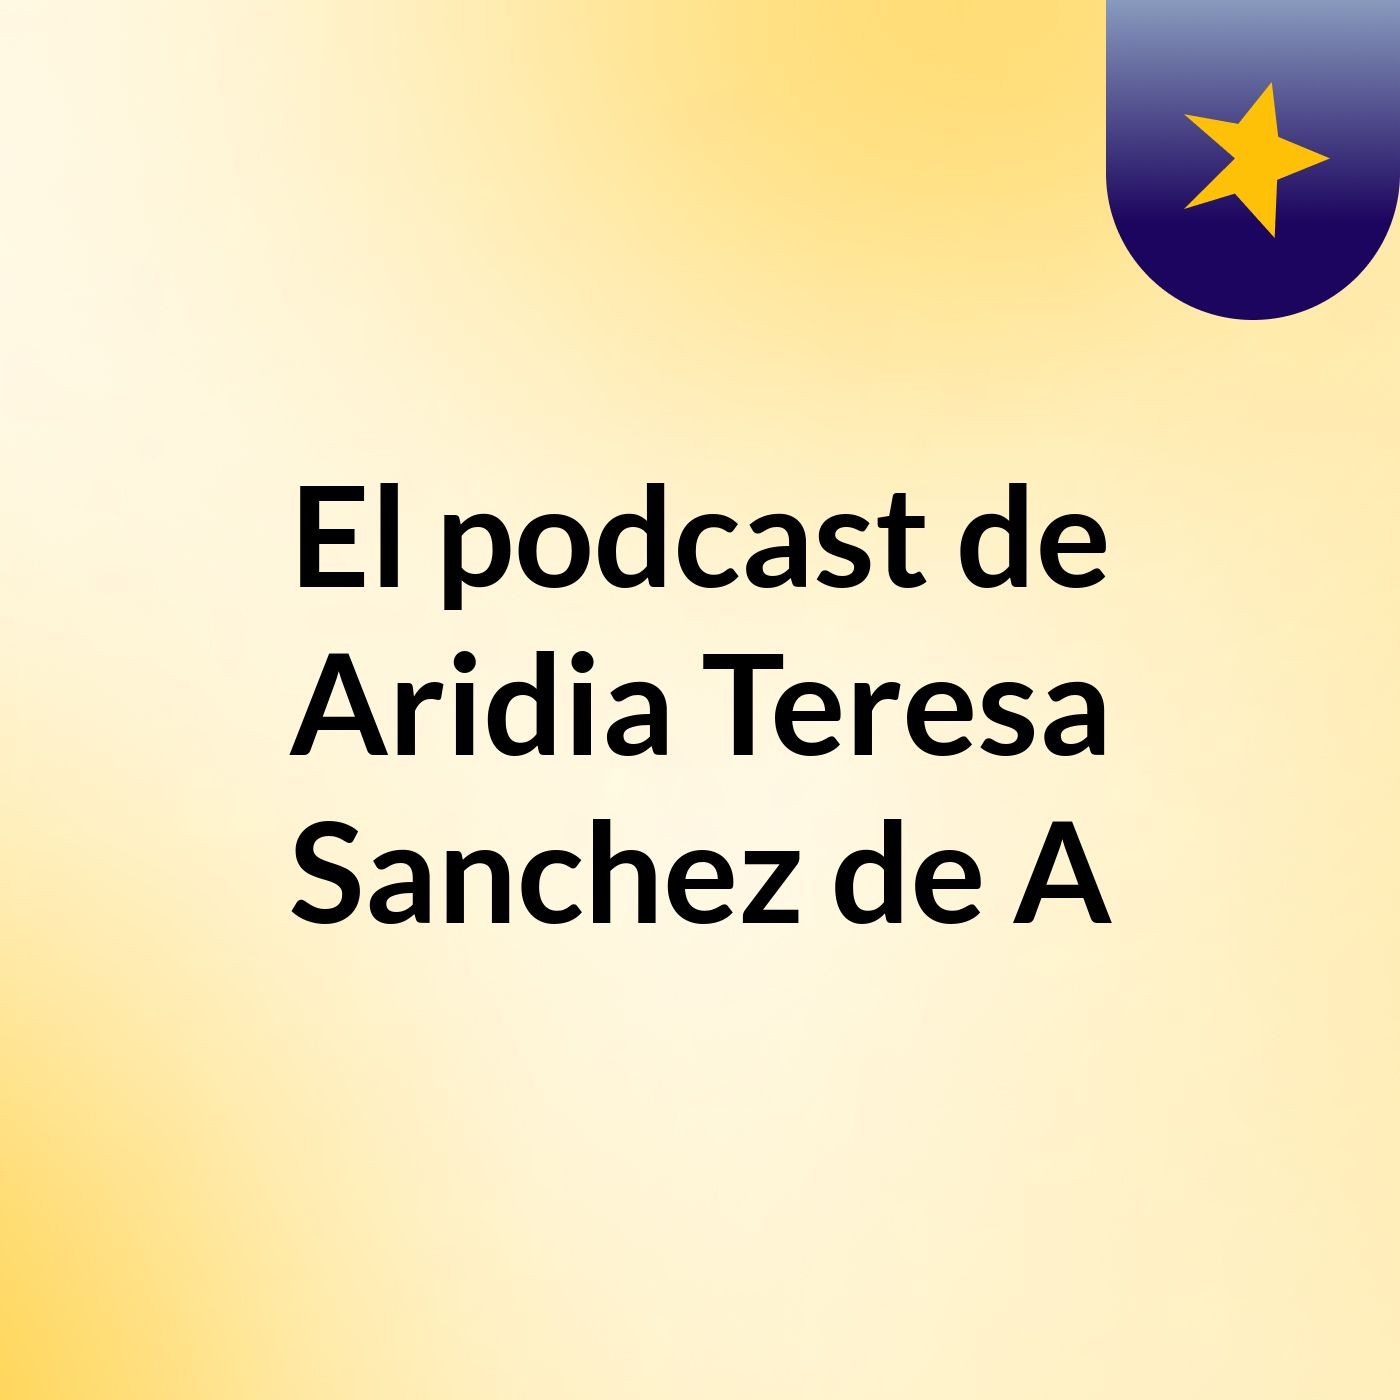 Episodio 2 - El podcast de Aridia Teresa Sanchez de A